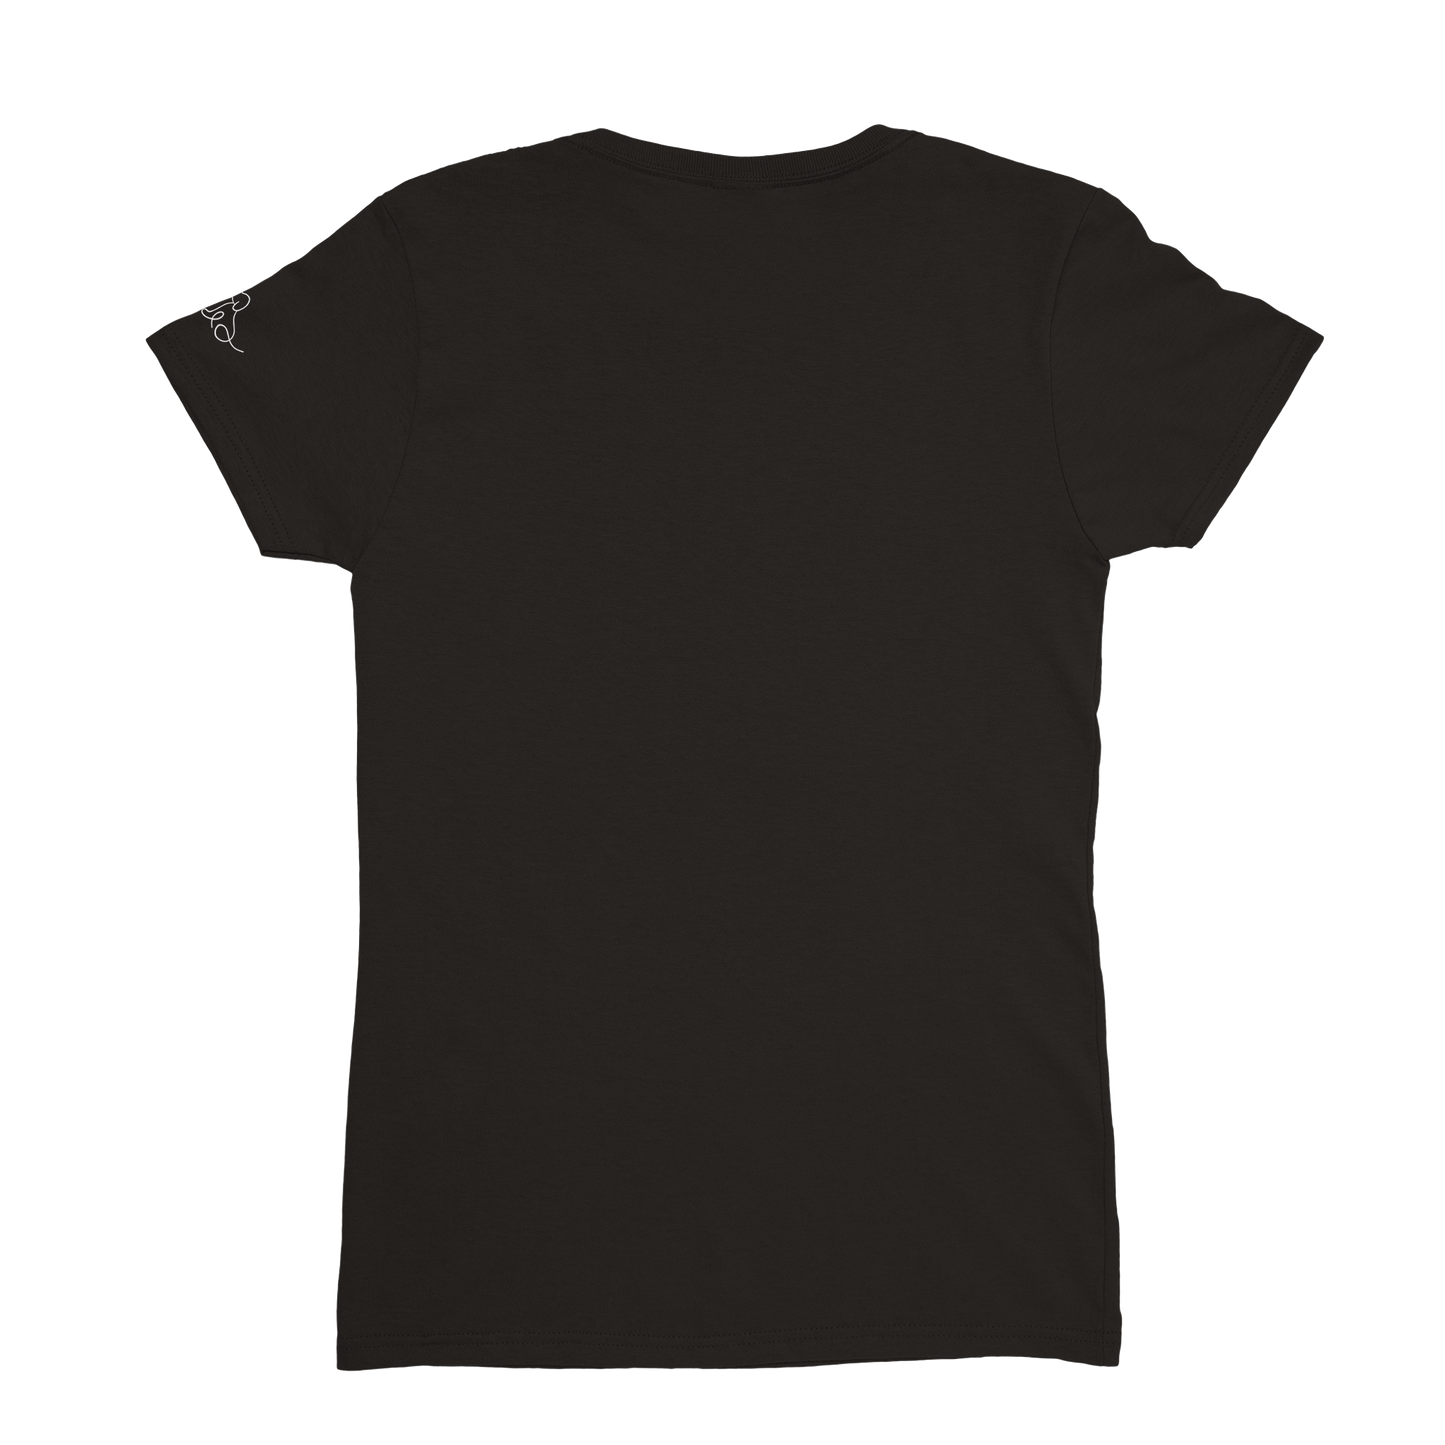 SHIRTGLÜCK vielseitiges Damen-T-Shirt "together" mit Rundhalsausschnitt | 100% Baumwolle mit 180 g/m²